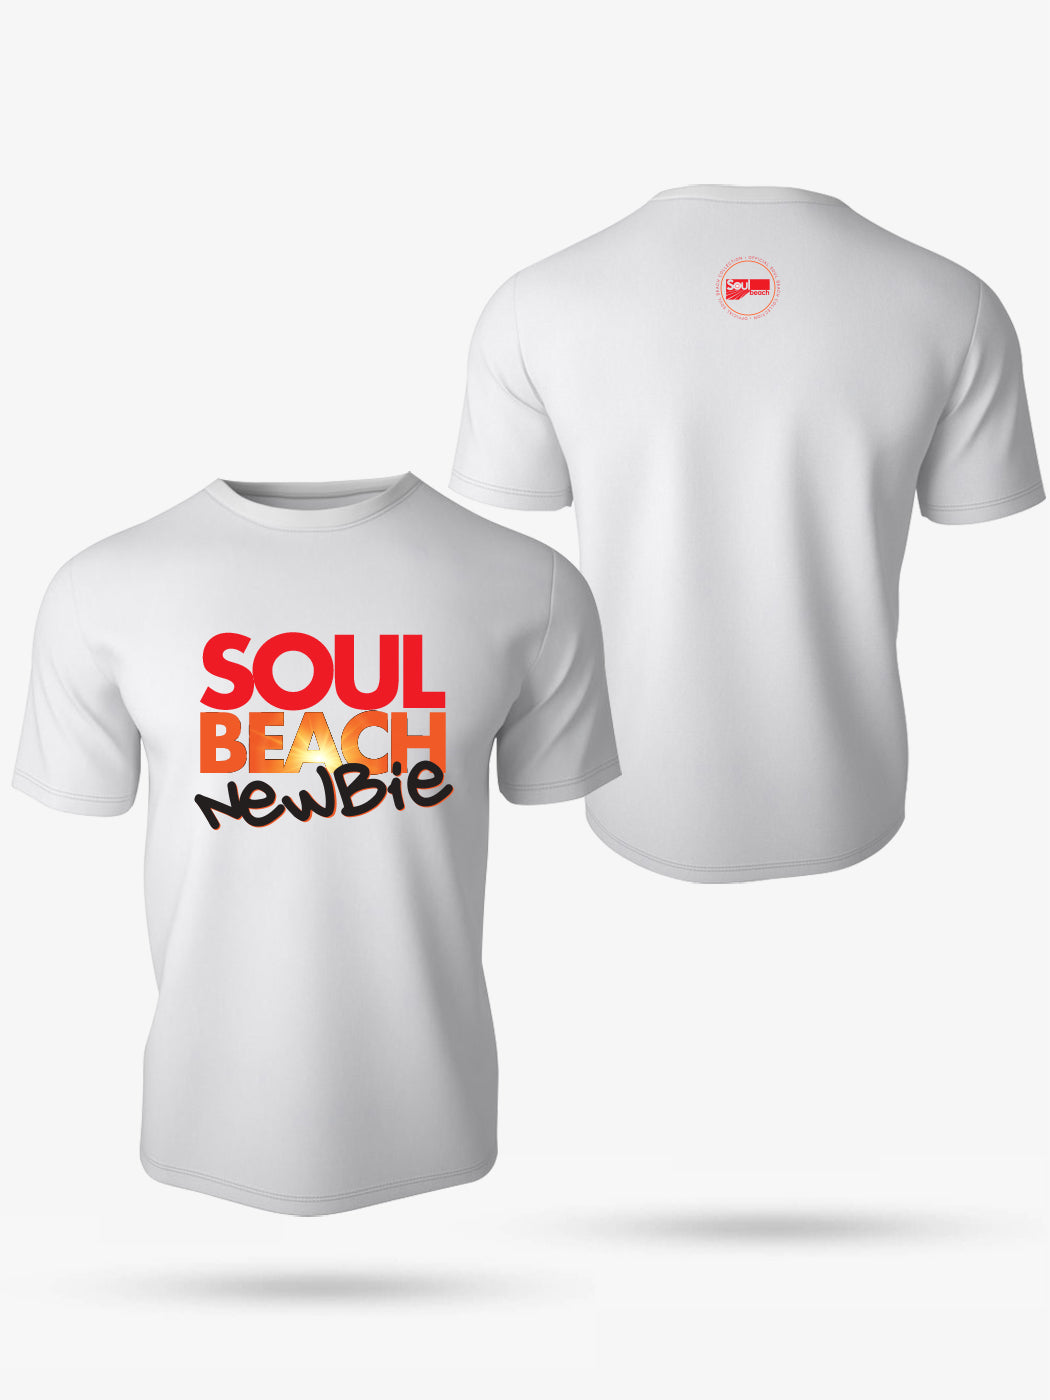 Newbie (Men) T-Shirt